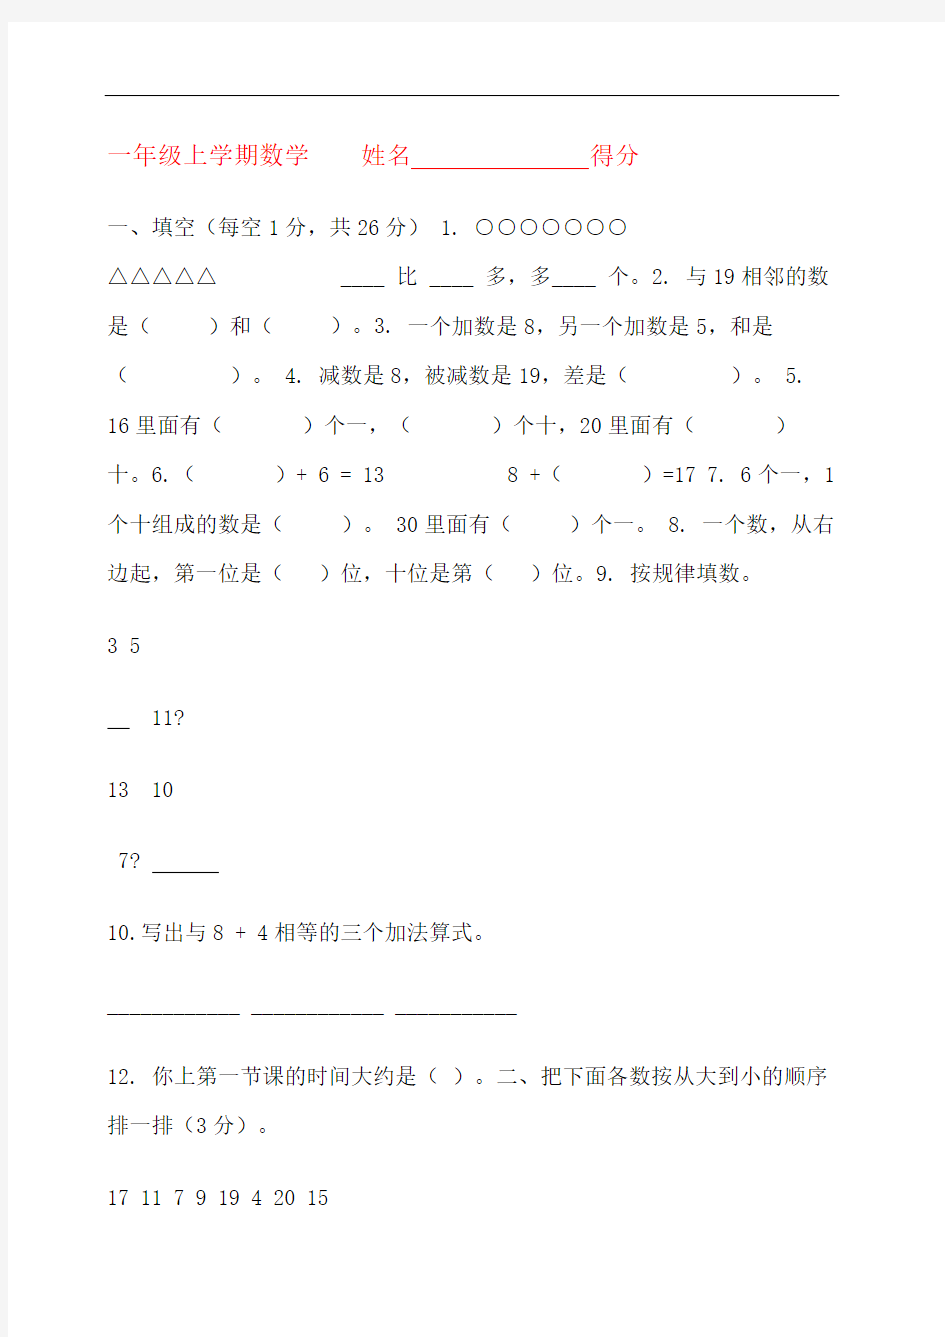 上海小学一年级数学试卷考卷精修订